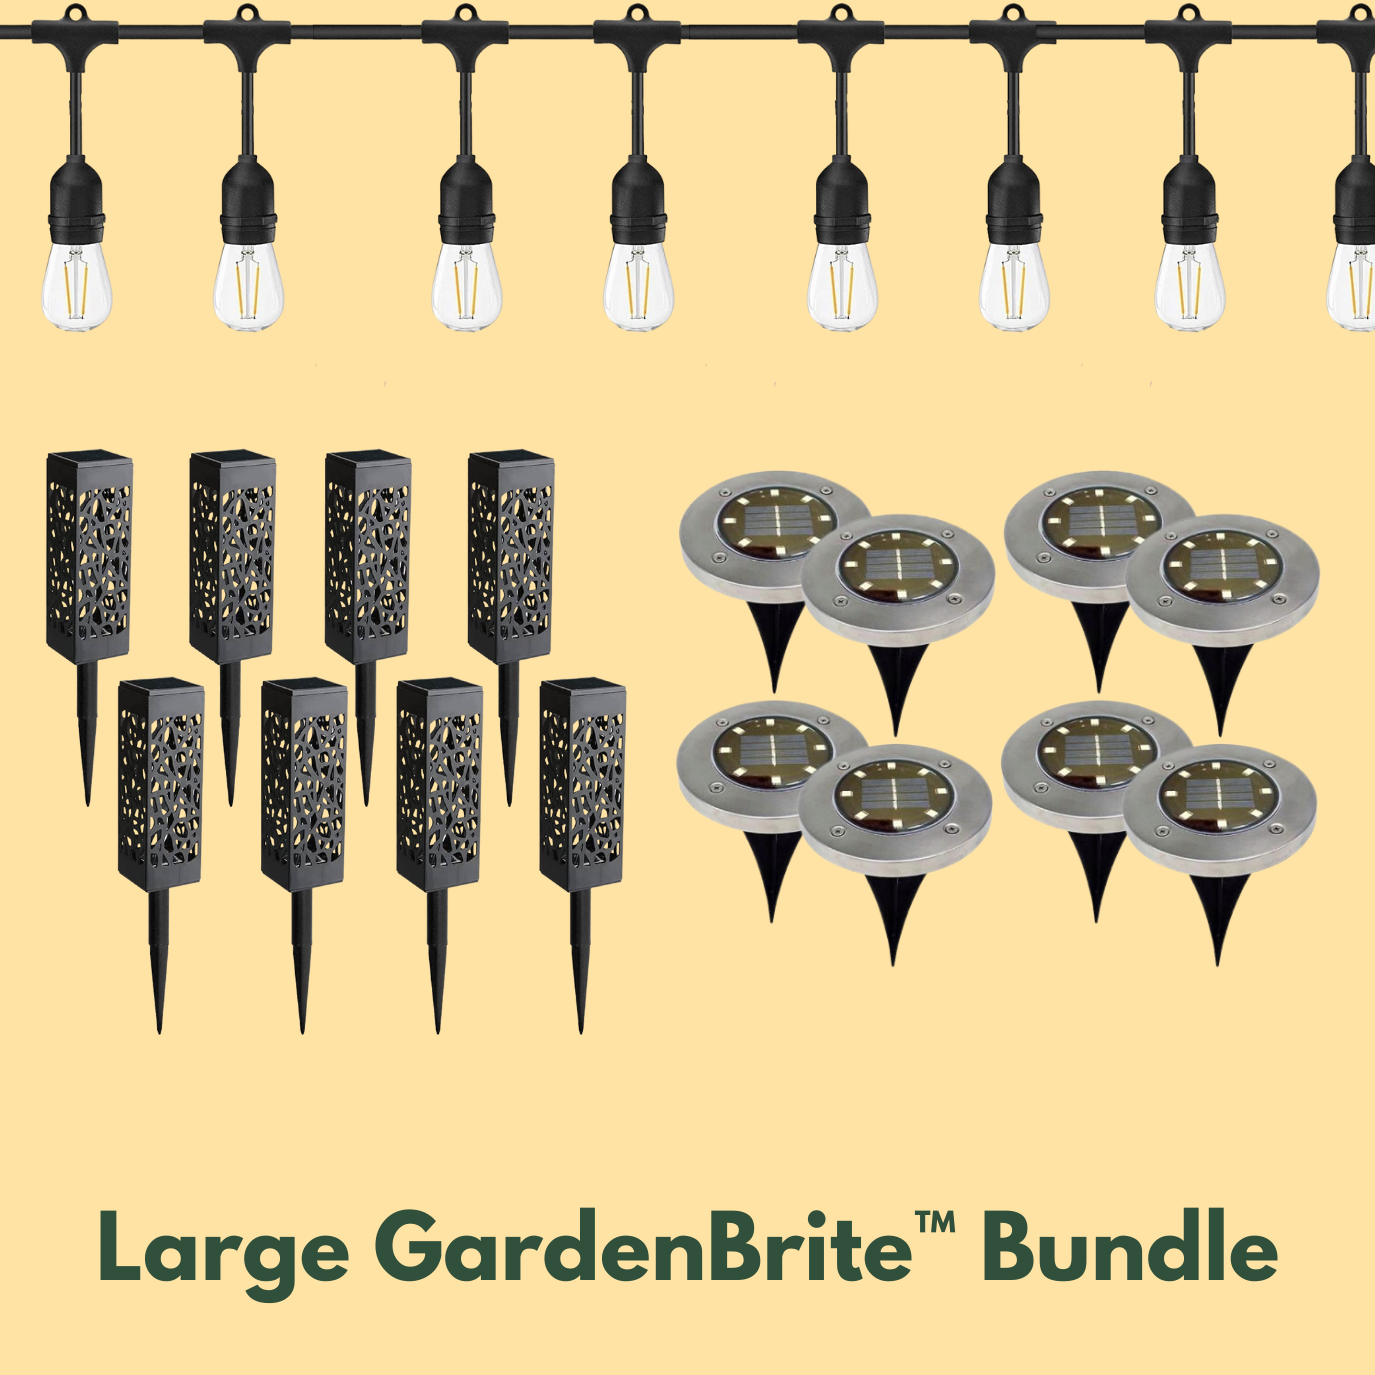 GardenBrite™ Large Garden Bundle